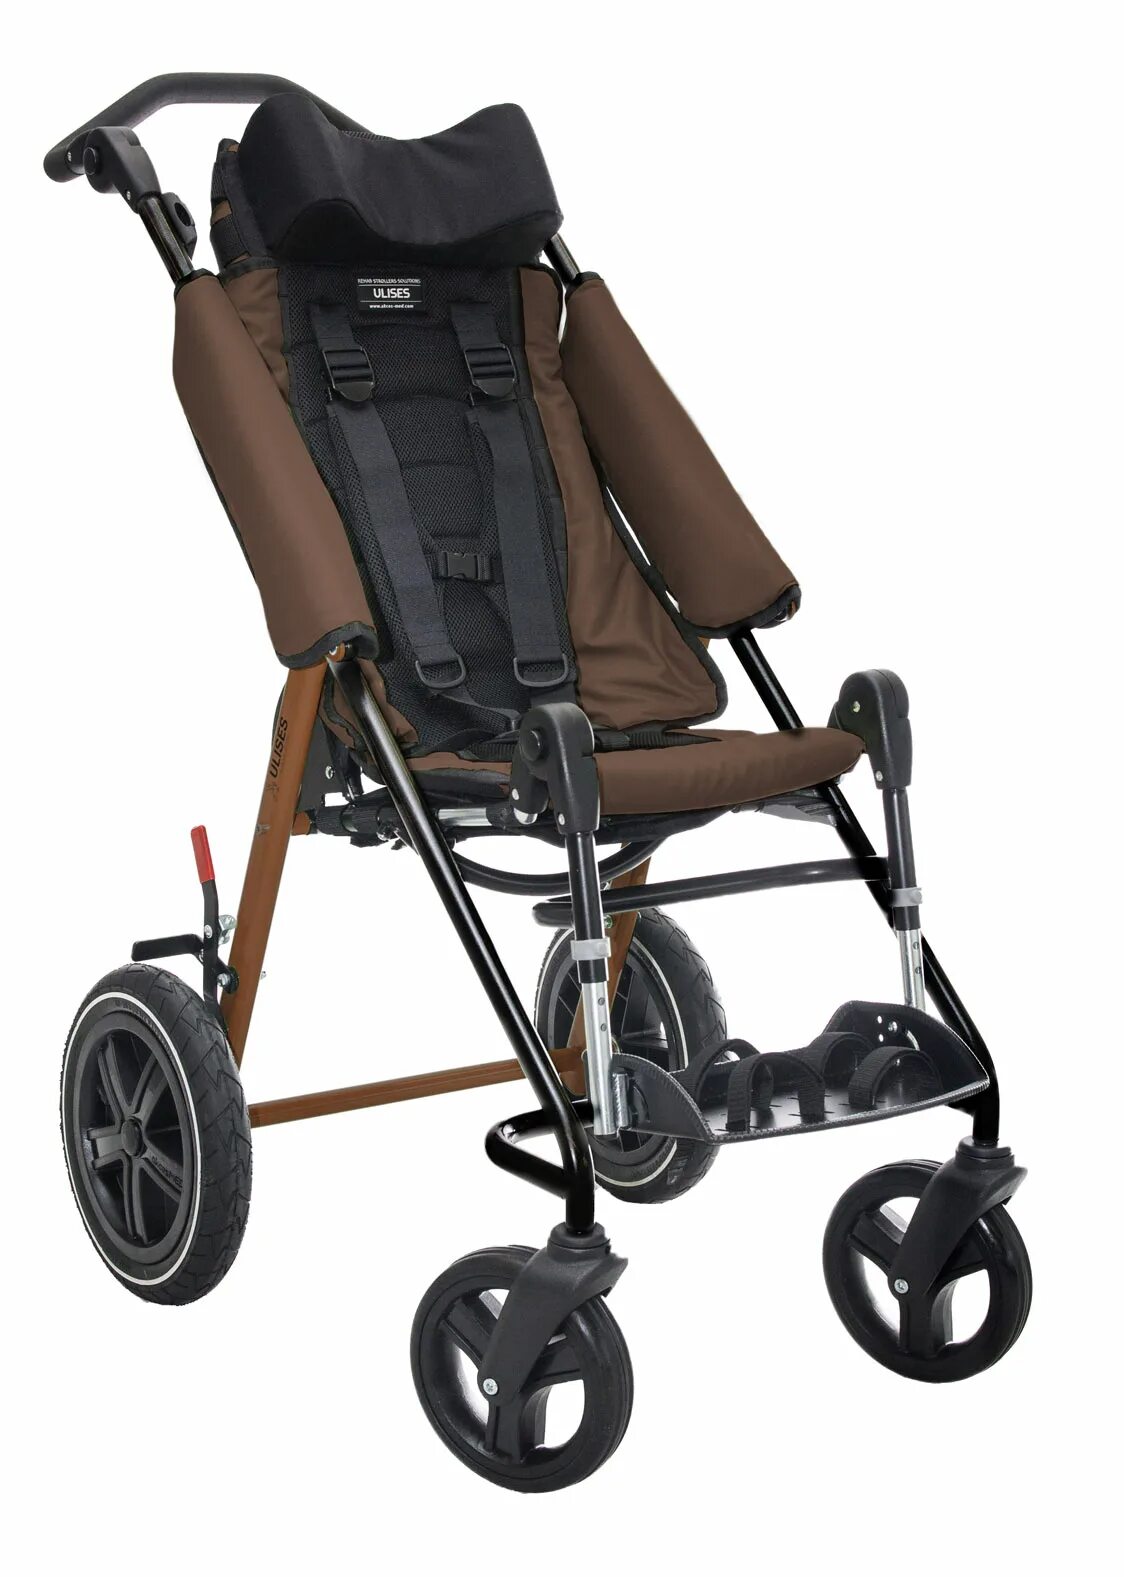 Прогулочная коляска для детей с дцп. Ulises коляска для ДЦП. Коляска Улисес для детей с ДЦП. Ulises инвалидная прогулочная коляска. Коляска рейсер+ 3 для детей с ДЦП.